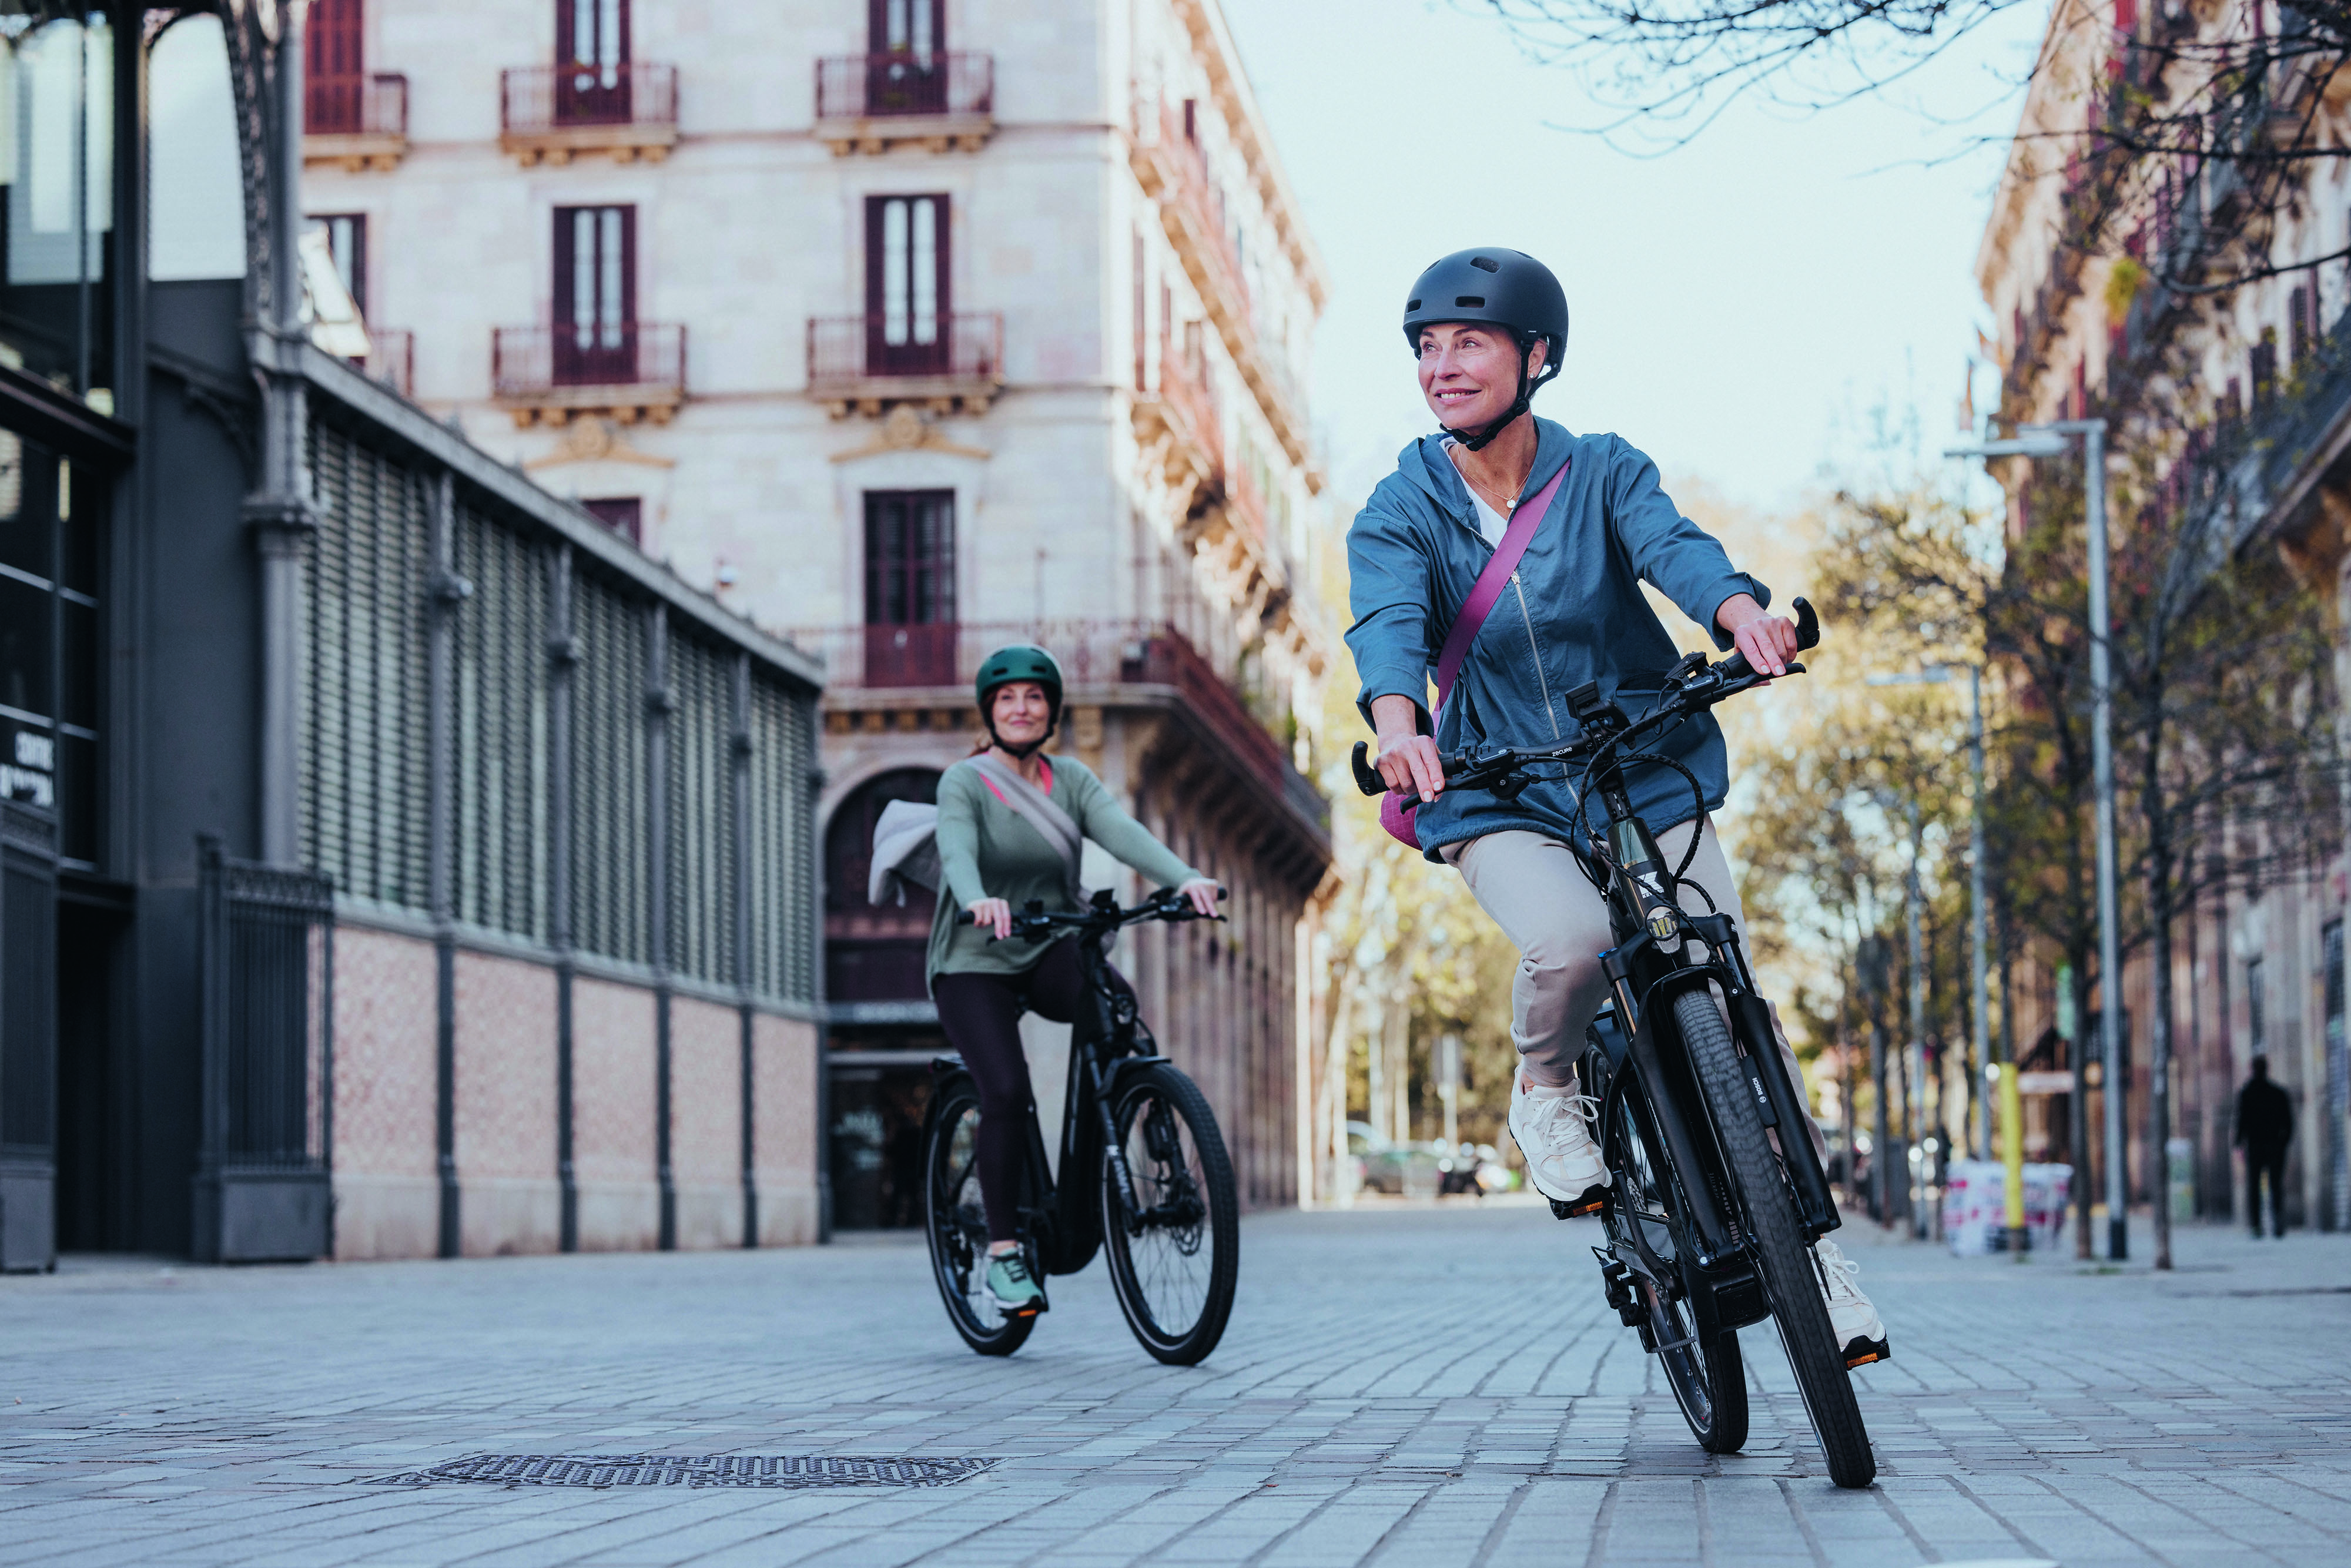 ABS Touring eignet sich für Fahrten mit dem eCity Bike in der Stadt, die von wechselnden Fahrbahnbelägen, Fußgängerüberwegen und Ampeln geprägt sind. 